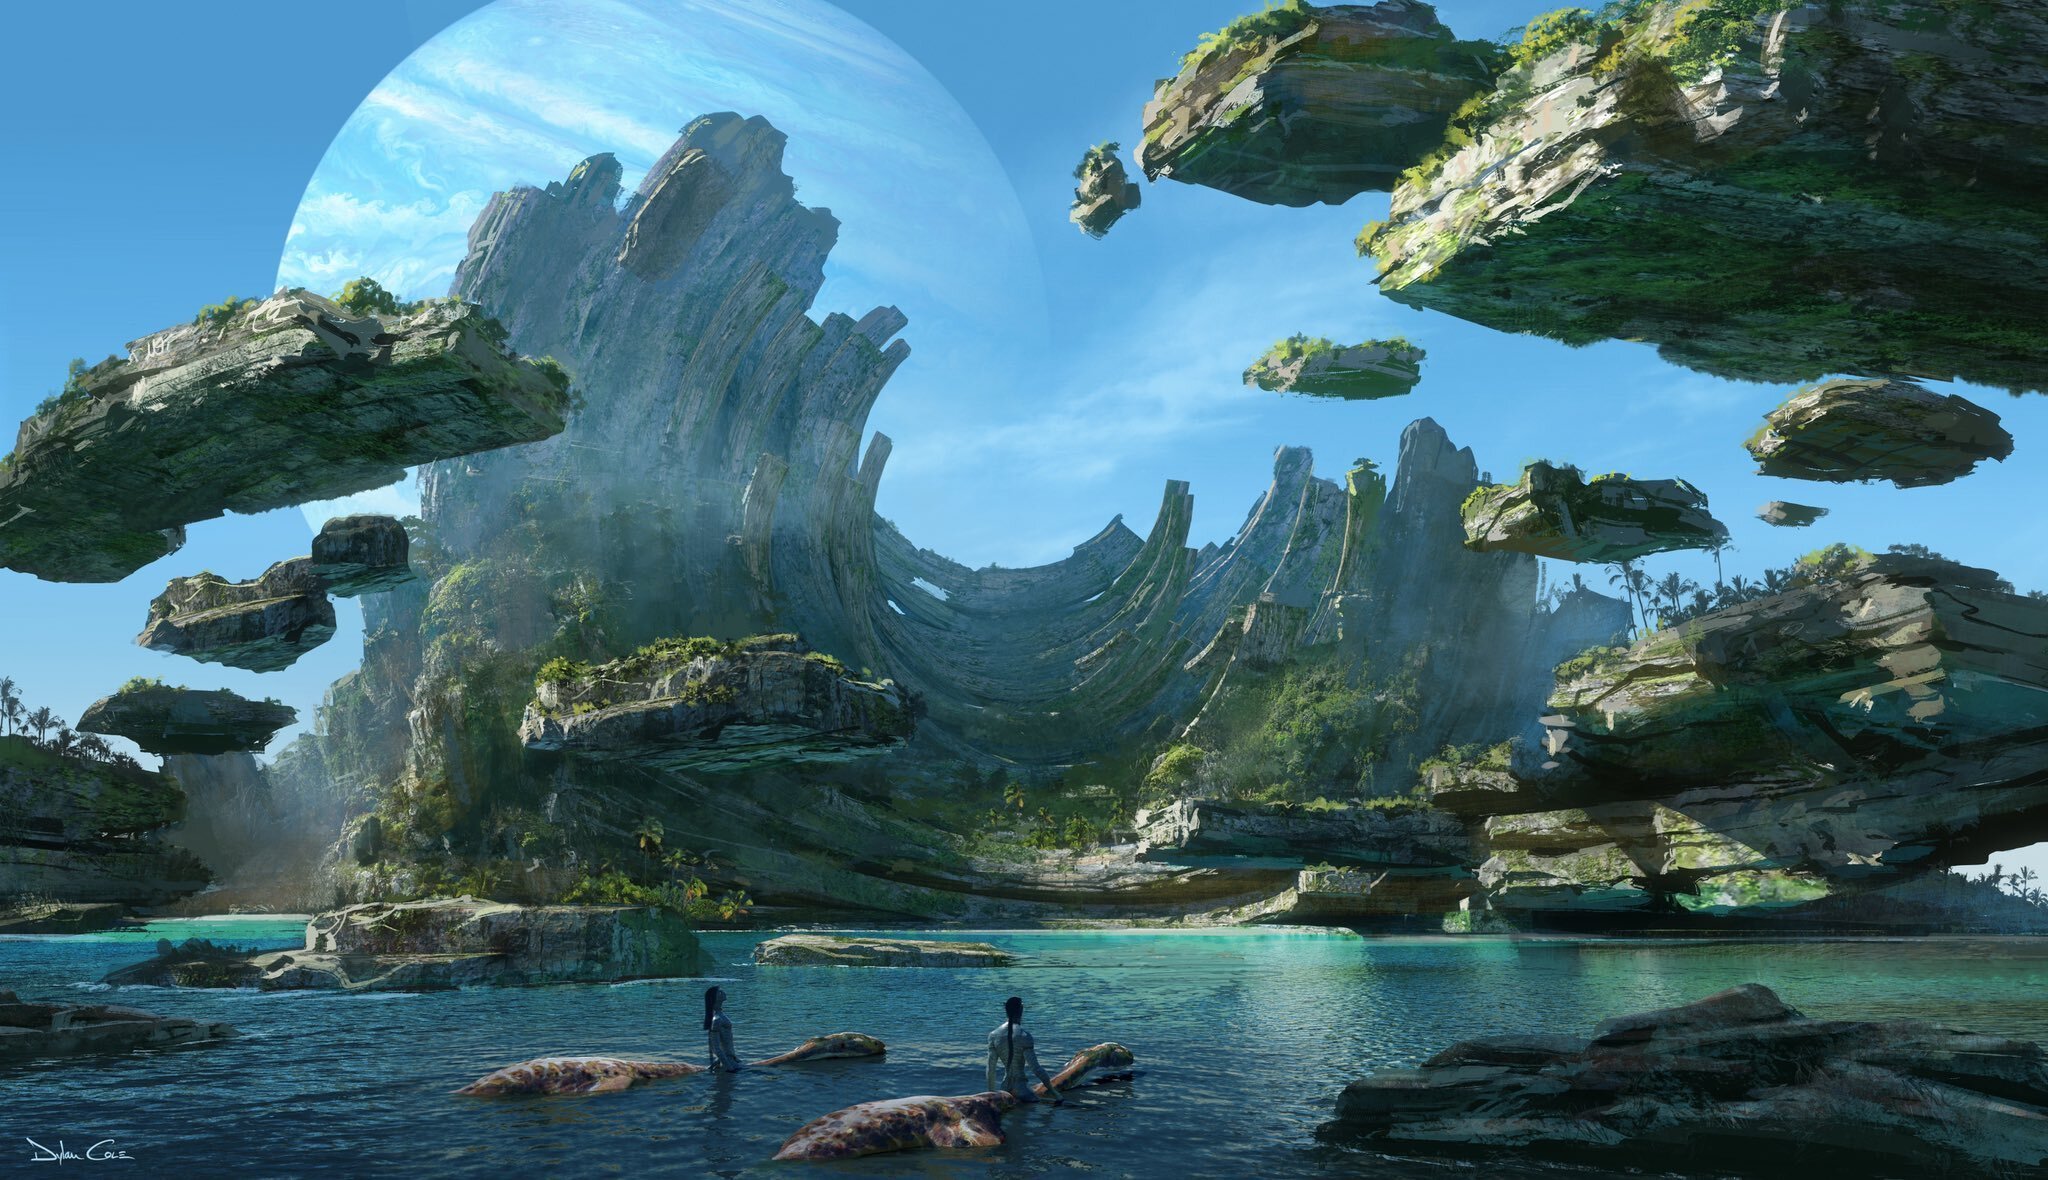 Avatar 2 - Đón chờ bộ phim được mong đợi nhất trong năm với Avatar 2 sẽ đem đến những cảm xúc rất khác biệt. Cùng trở lại hành tinh Pandora với những thách thức mới, cuộc phiêu lưu sẽ đầy màu sắc và cảm xúc. Hãy đến và xem ngay bộ phim nhiều trương trình này.